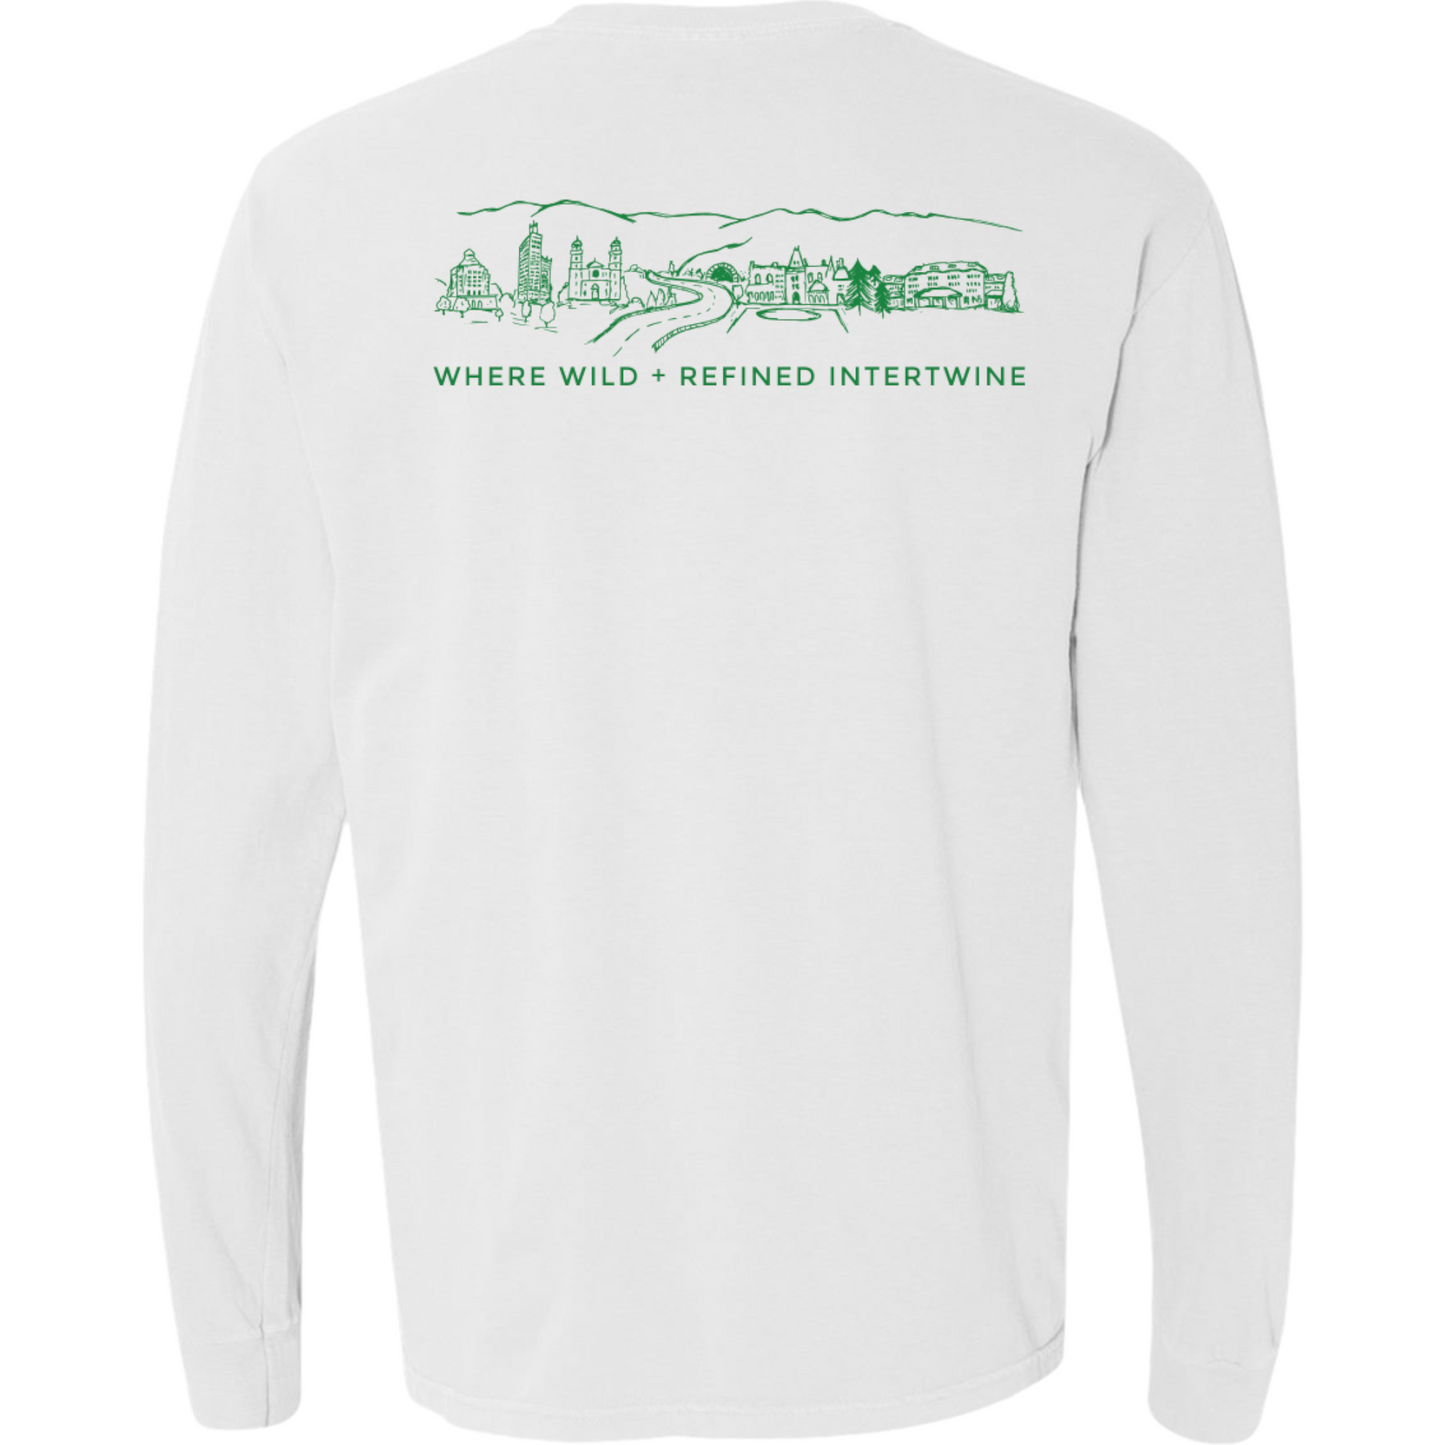 ASHEVILLE Cityscape Long Sleeved T-Shirt in White & Pisgah Green - The ASHEVILLE Co. TM